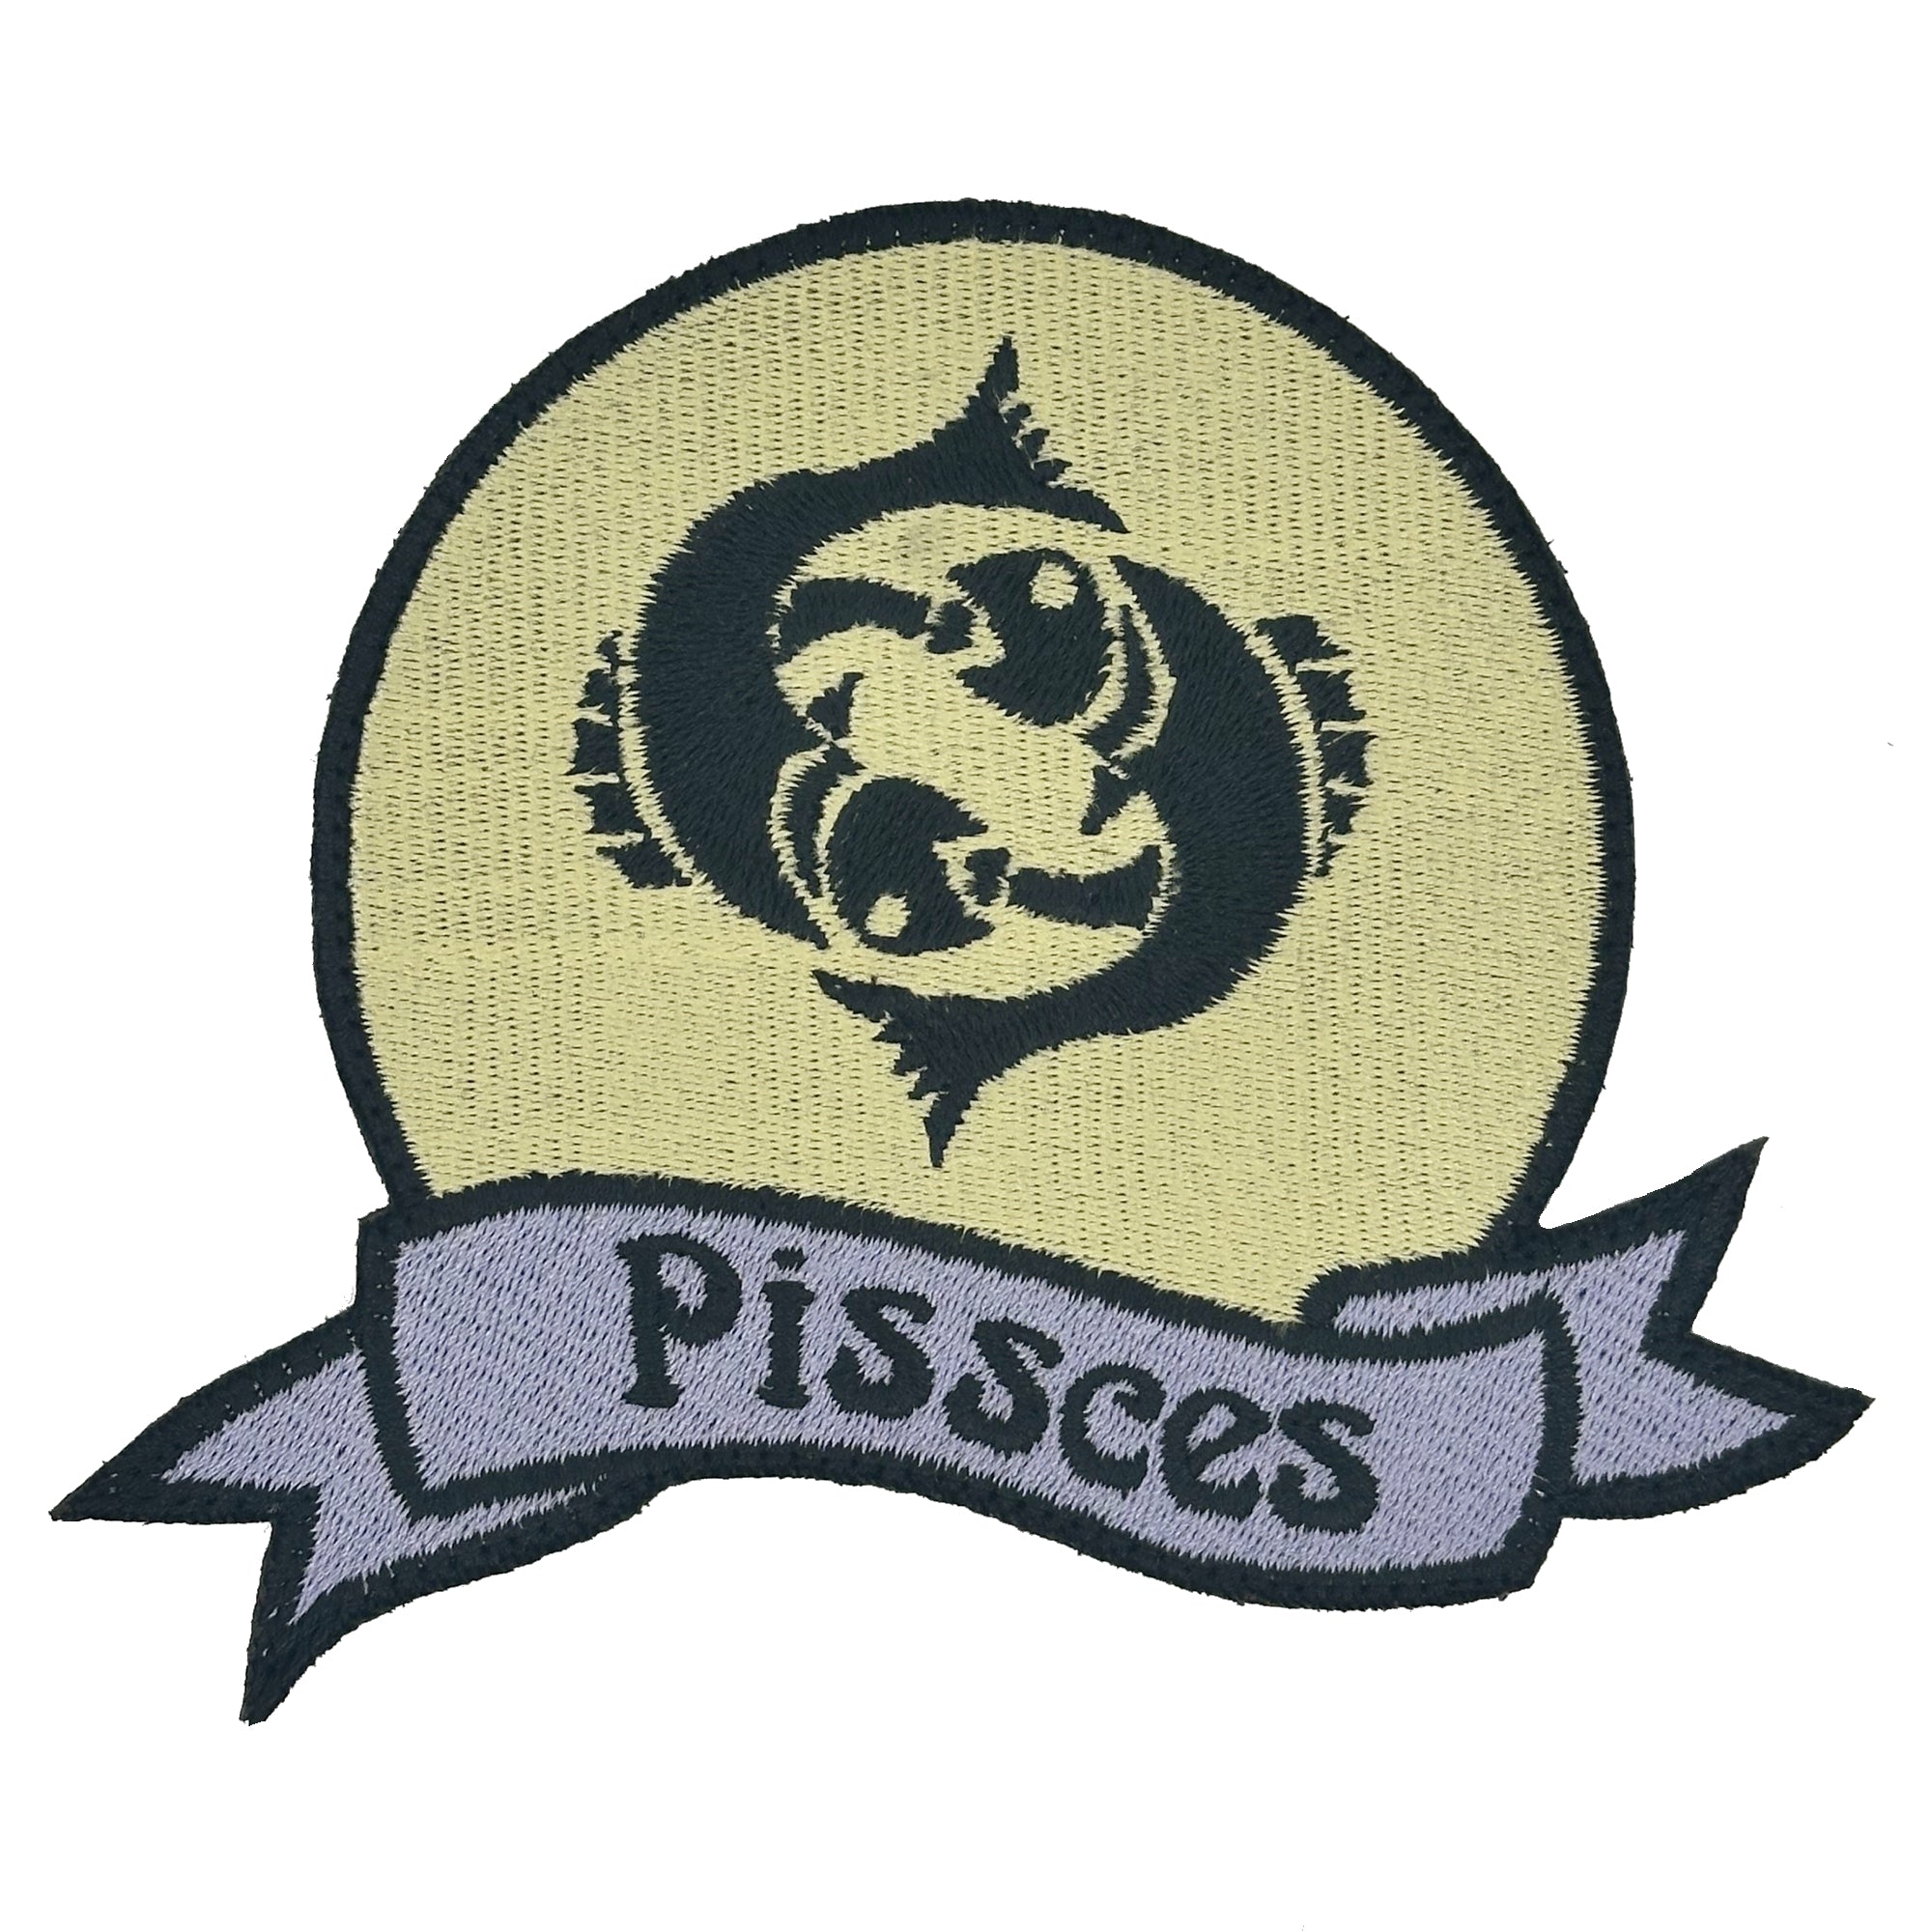 Pissces - 4.5" Patch